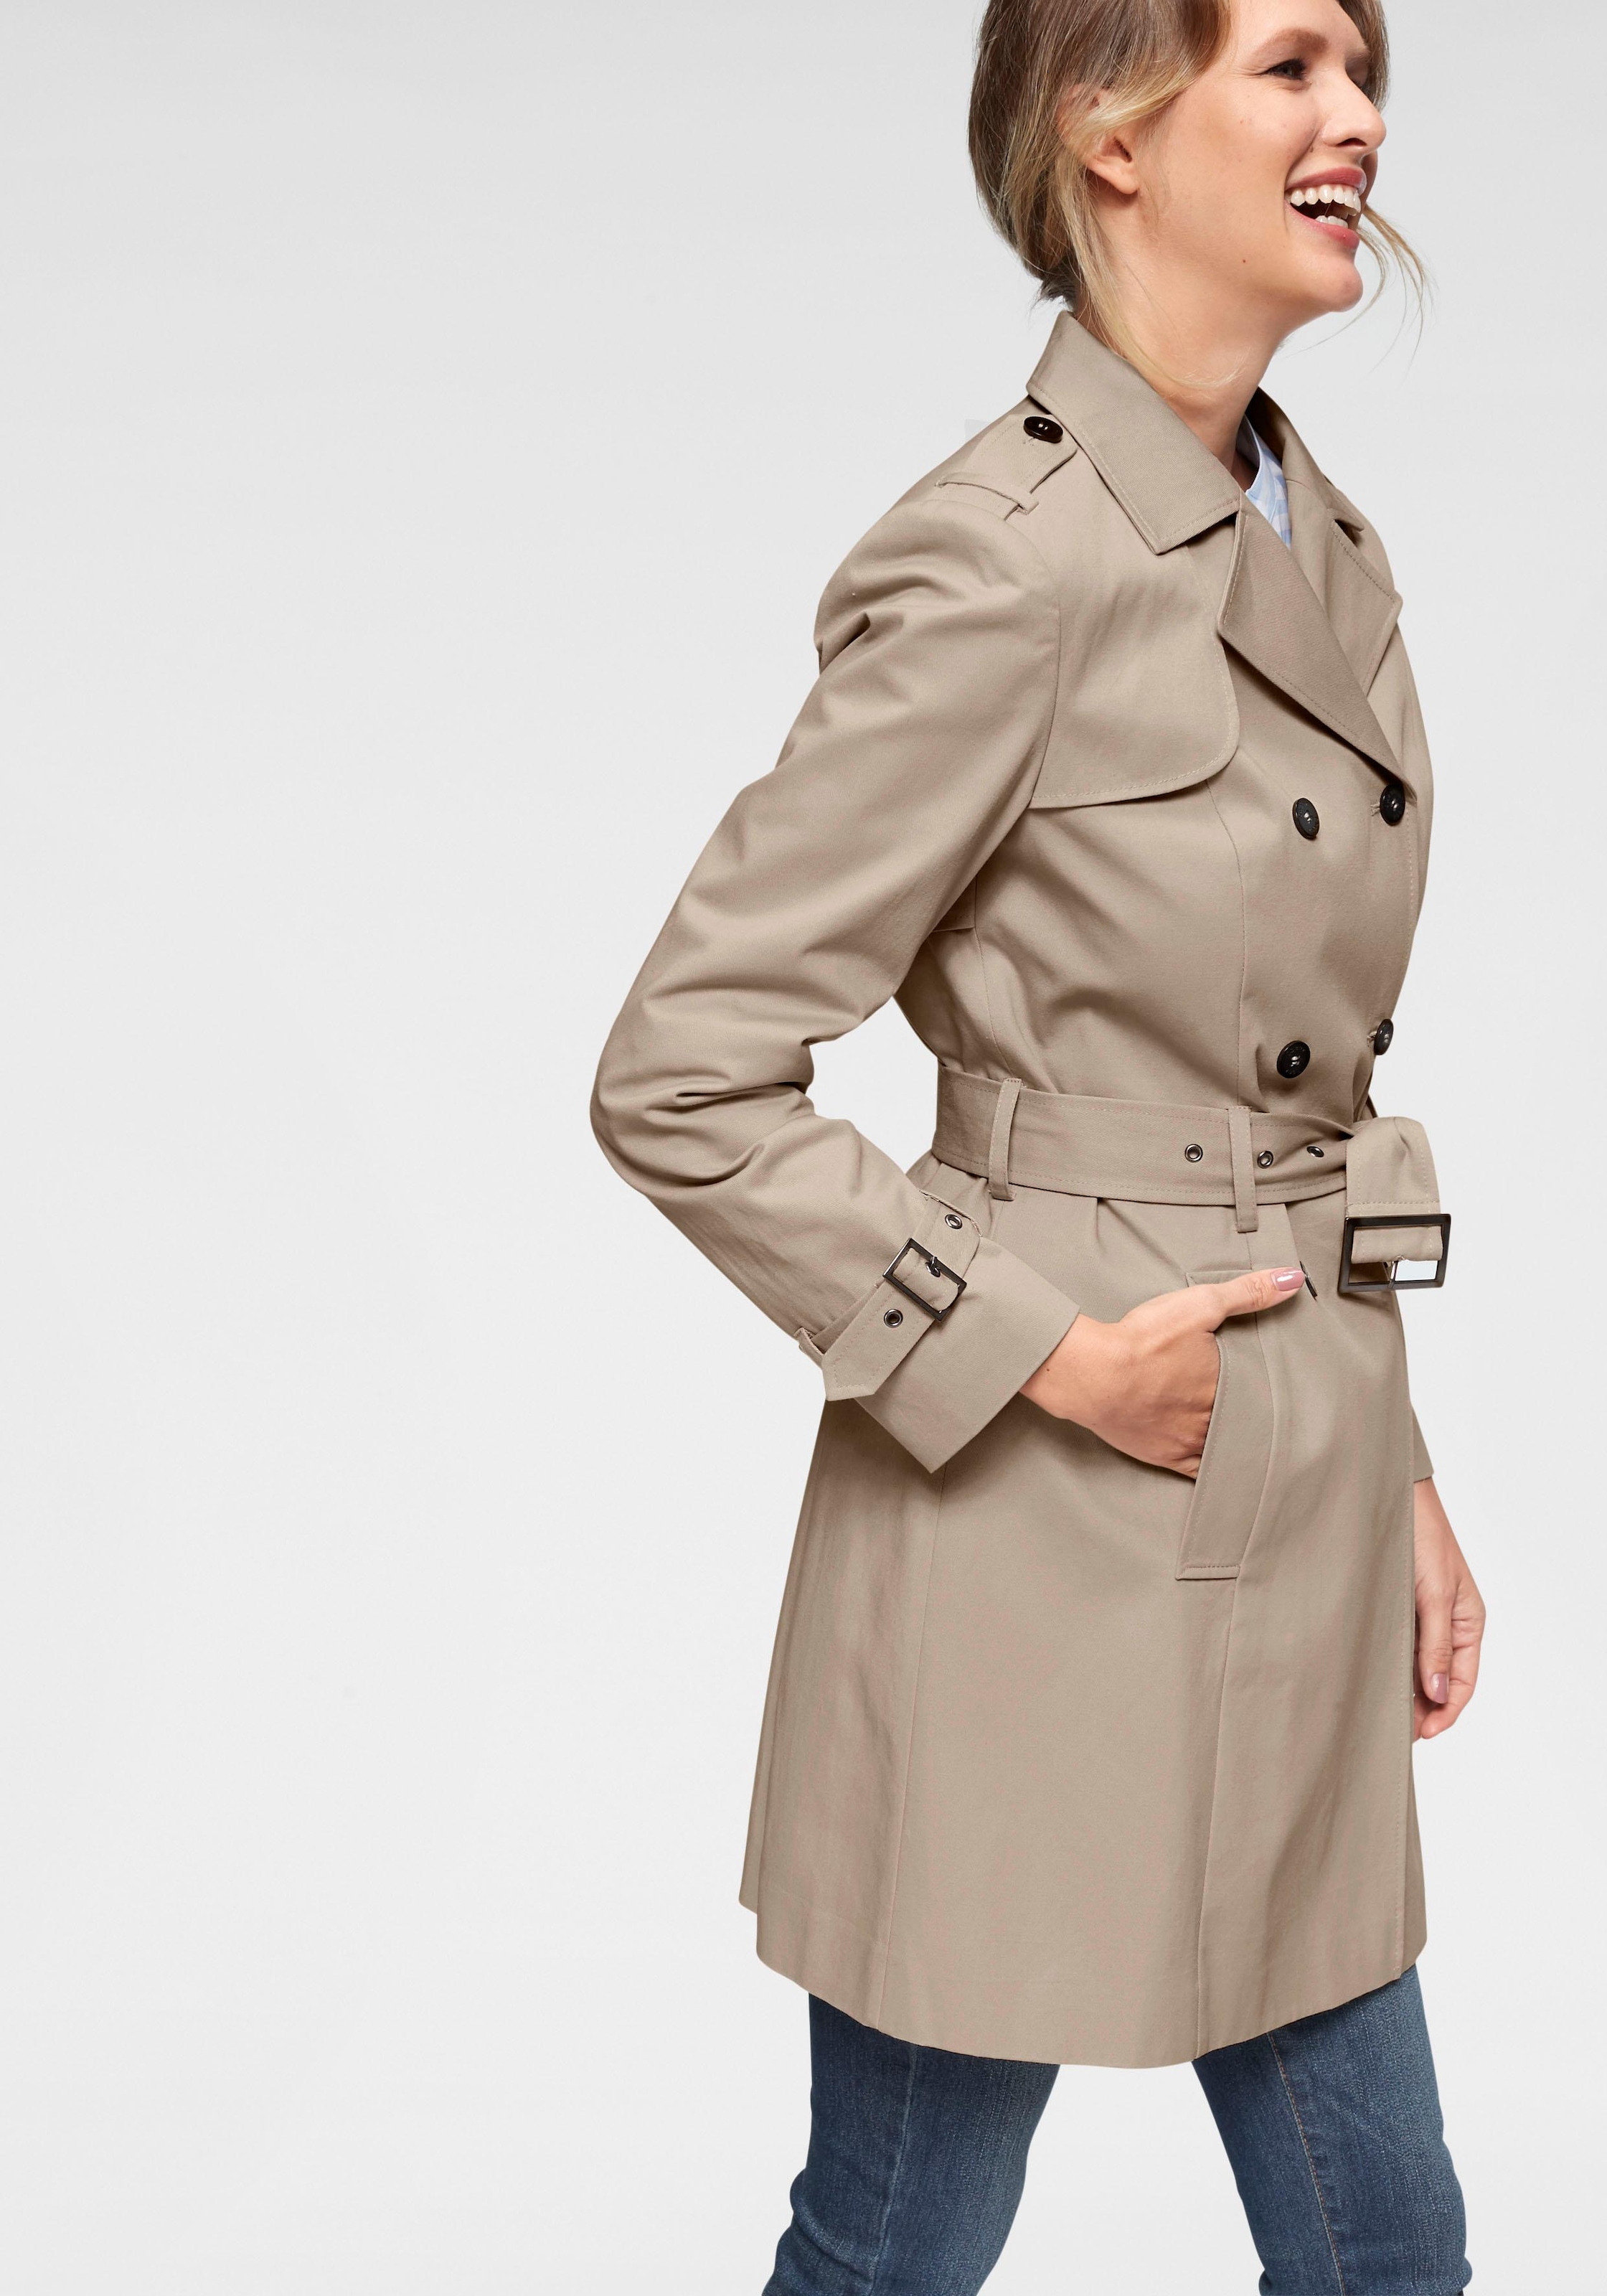 Mantel für Damen online kaufen Quelle Stilvolle | Damenmäntel bei